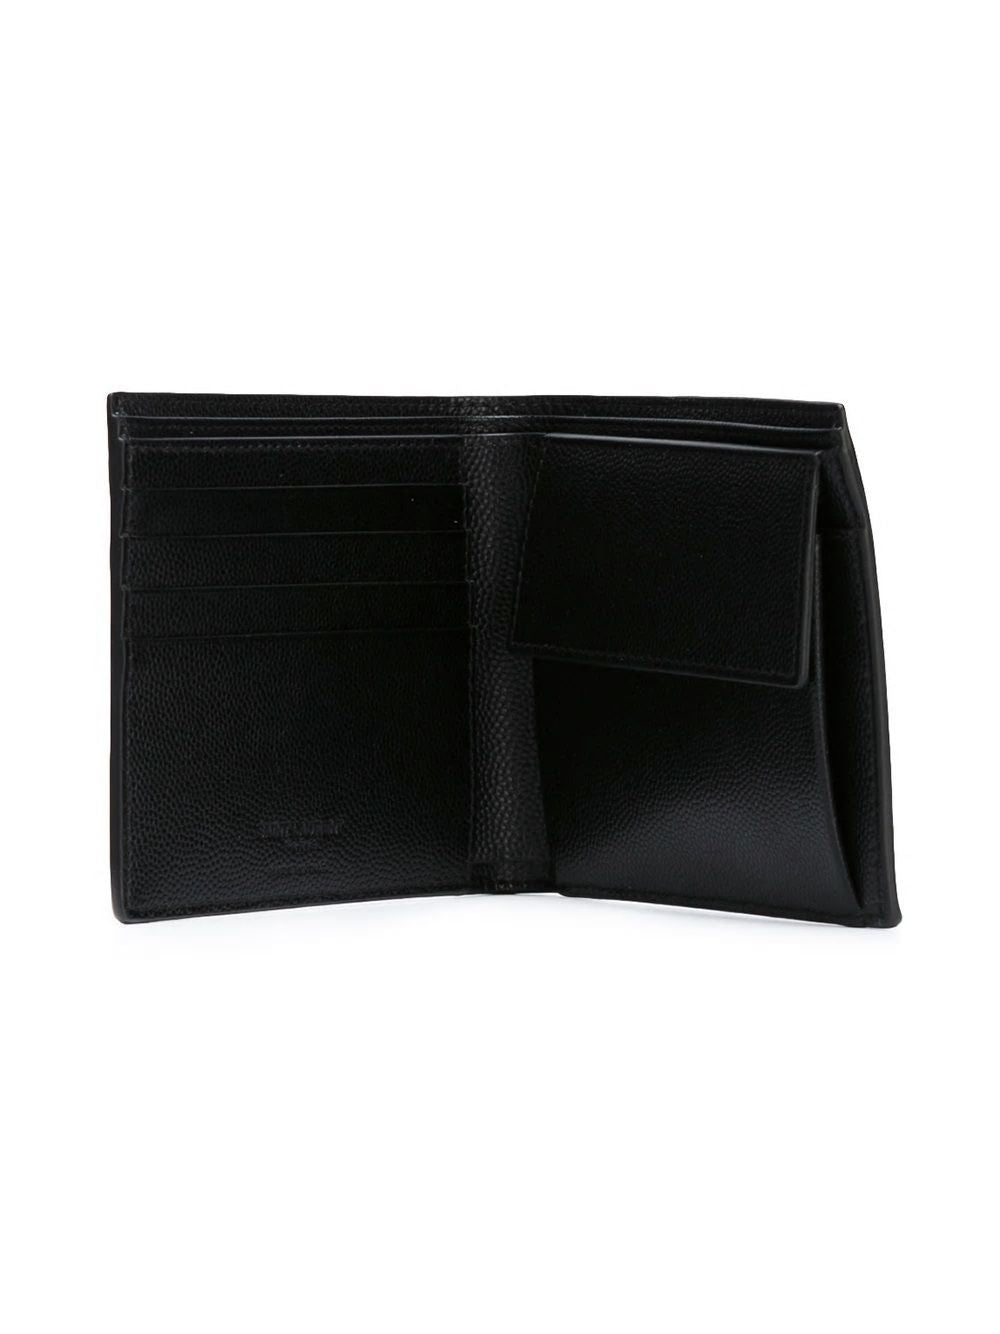 SAINT LAURENT Black Leather Bi-fold Wallet with Logo for Men